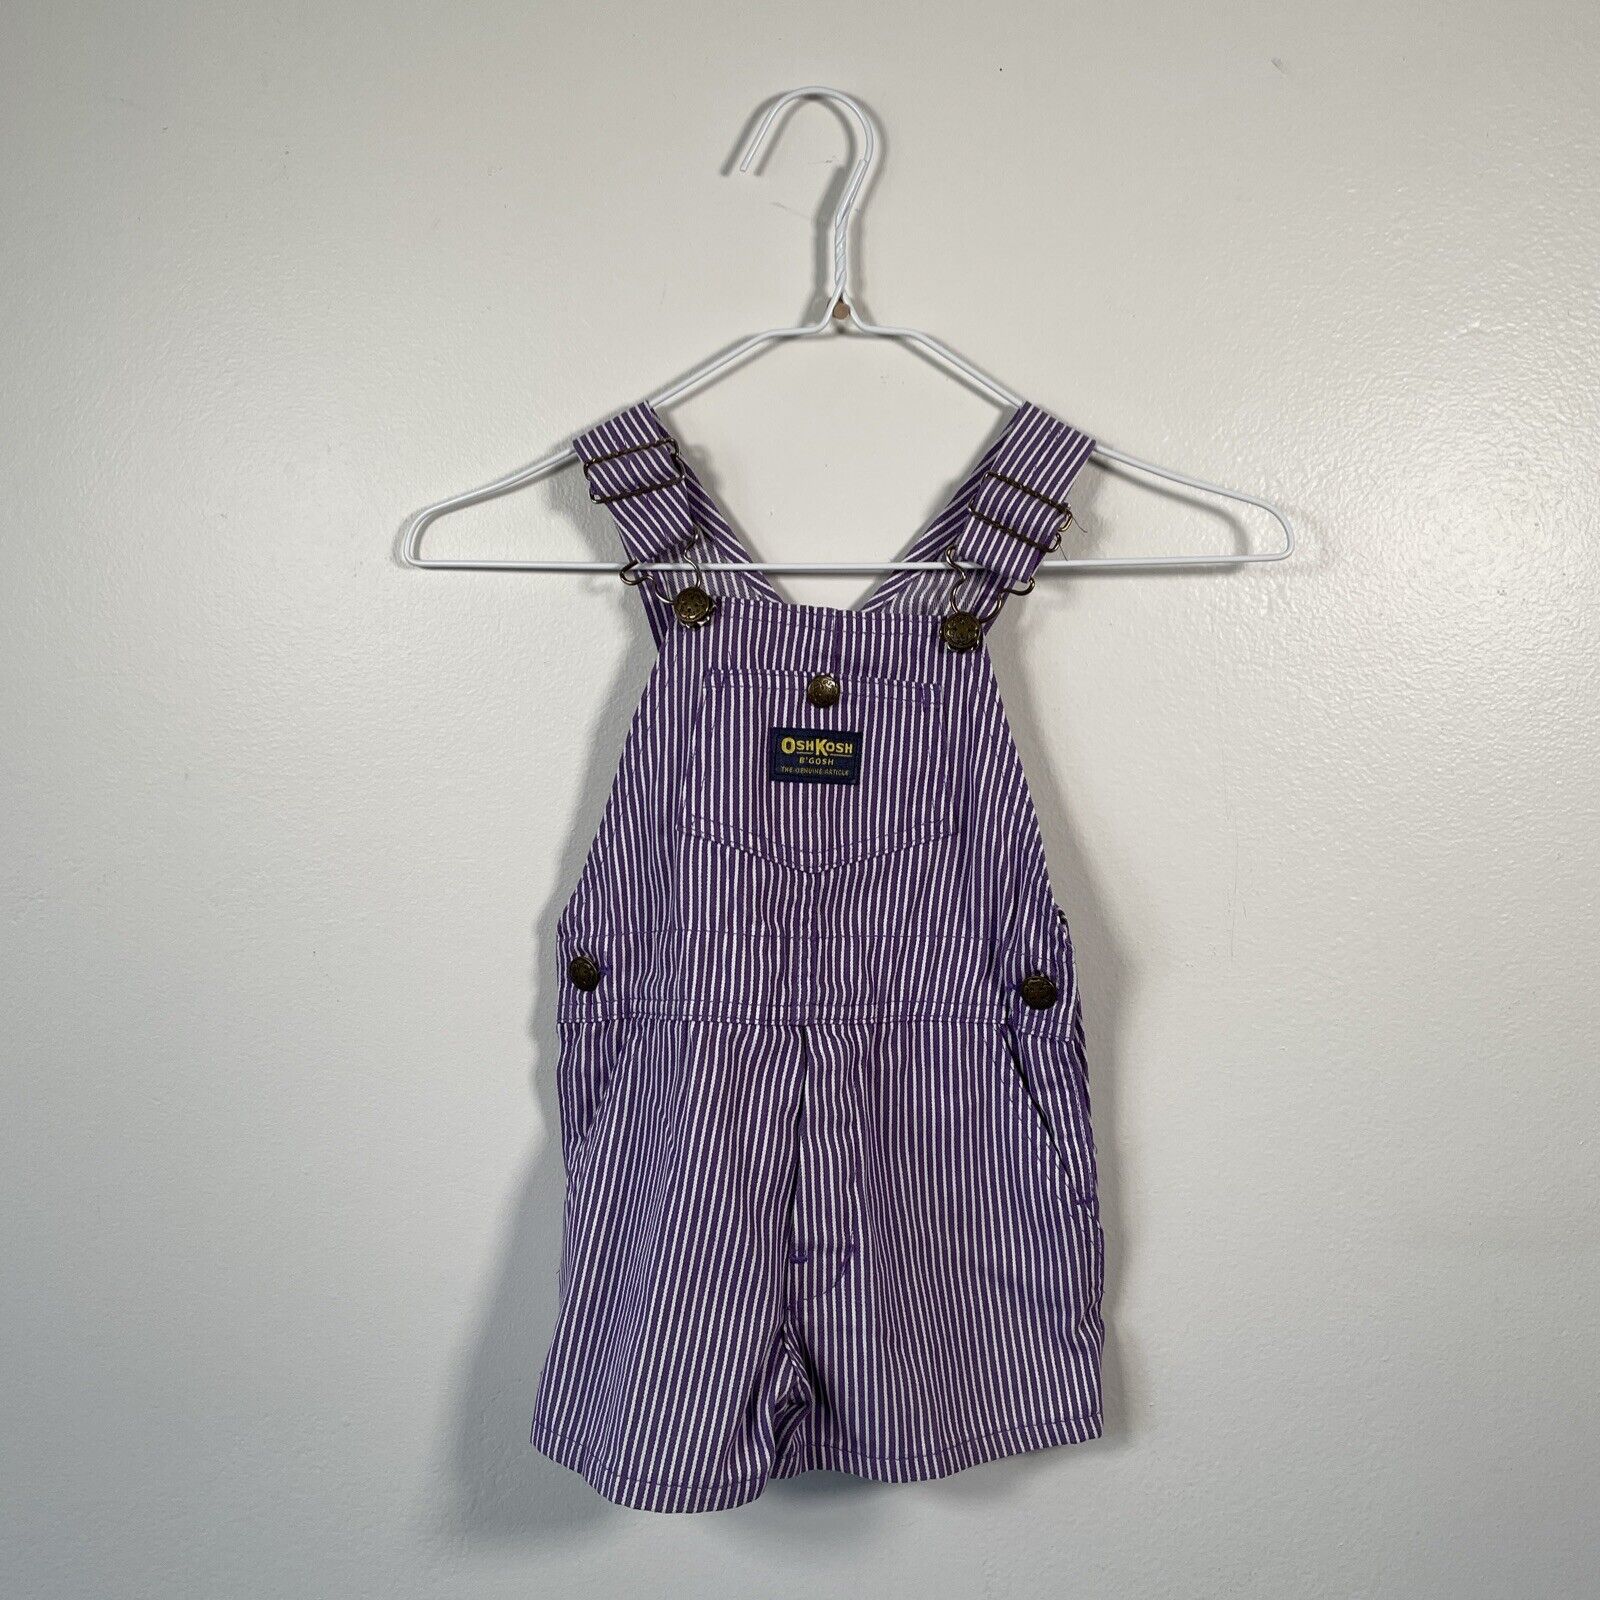 Vintage OshKosh B'Gosh Overalls Purple Stripe Vestbak Shortalls Toddler USA 4T